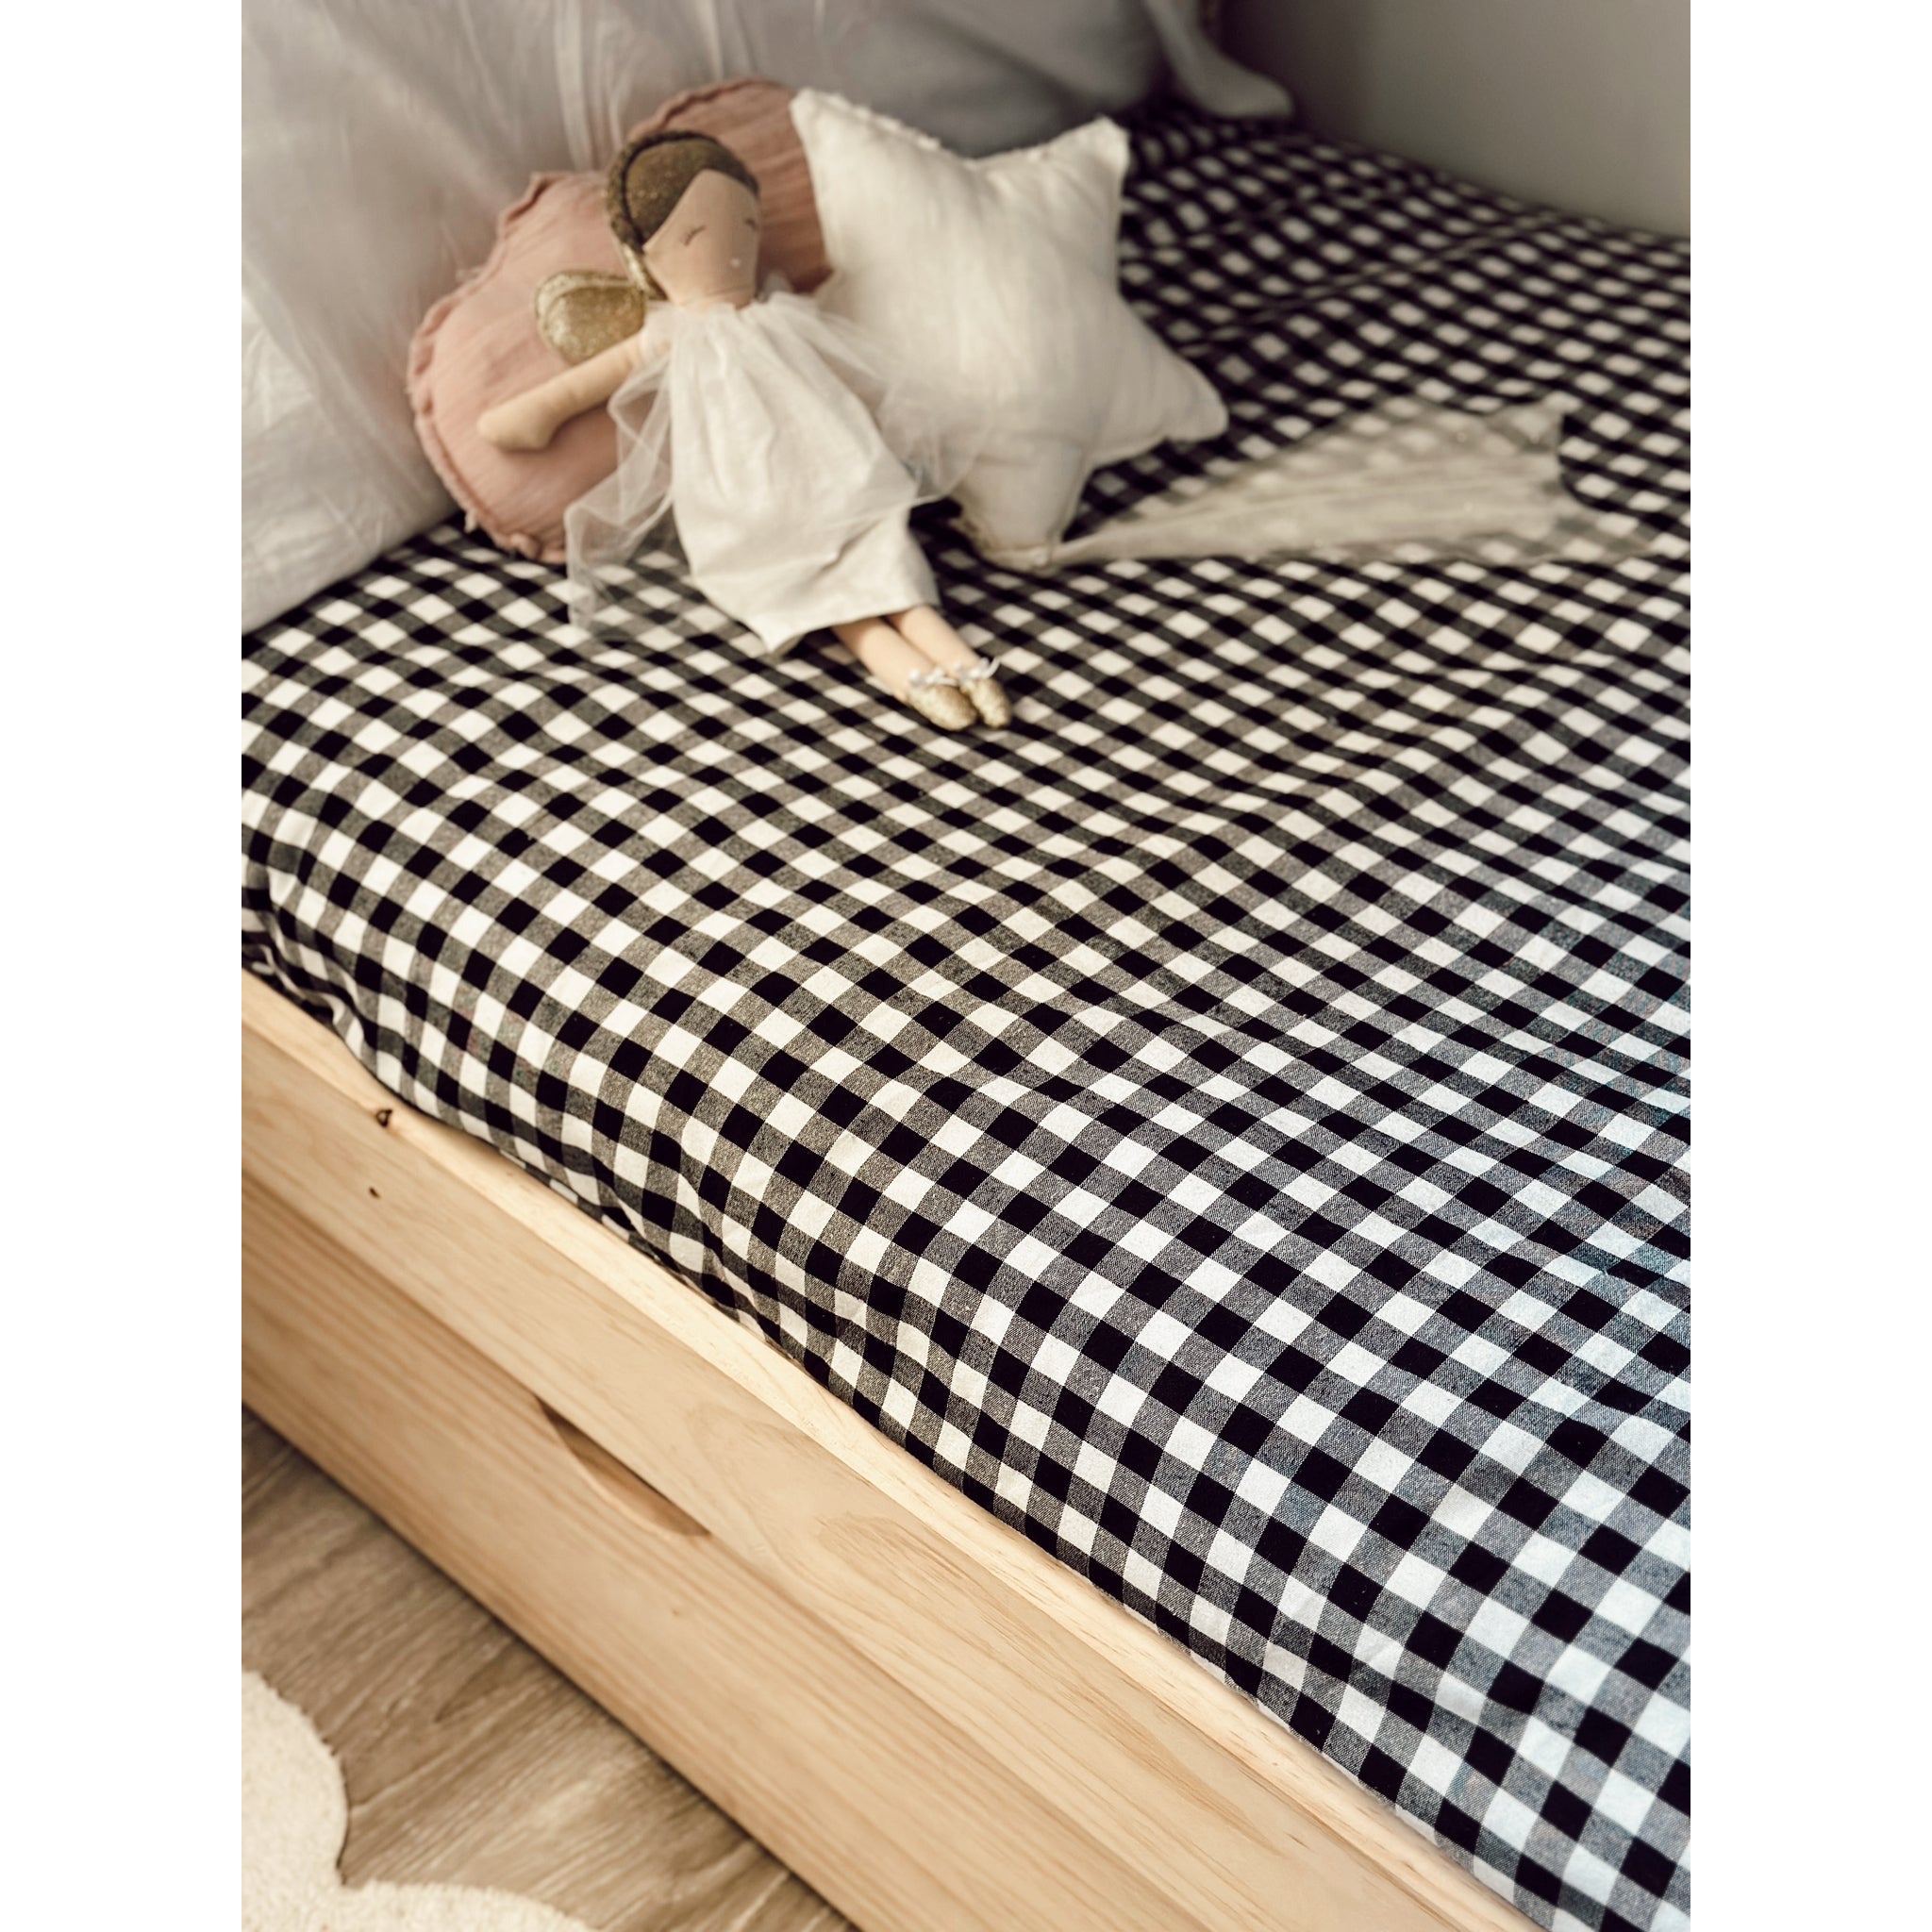 Fundas nórdicas para cama de 90 – Bonjour by Pompoko